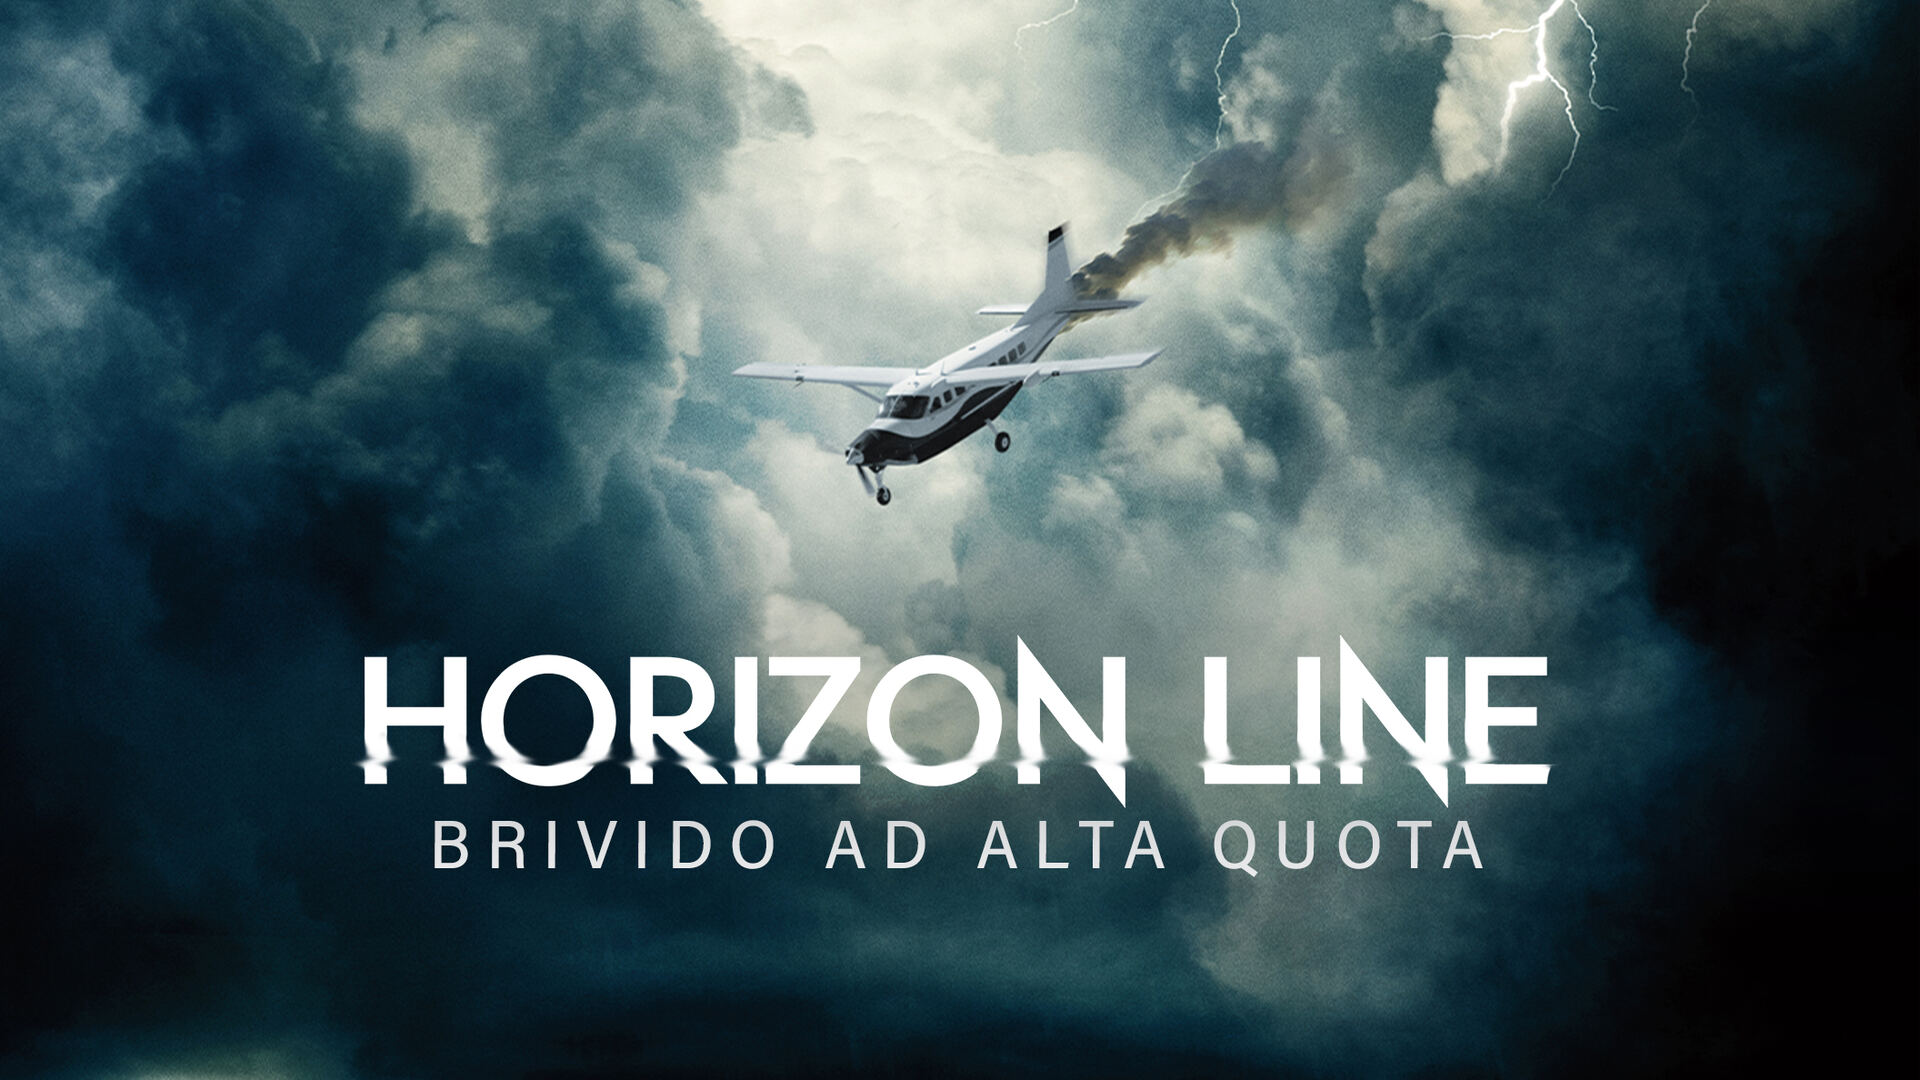 “Horizon line – Brividi ad alta quota”, alle 21.20 su Italia 1: la trama e il cast del film in onda mercoledì 12 giugno